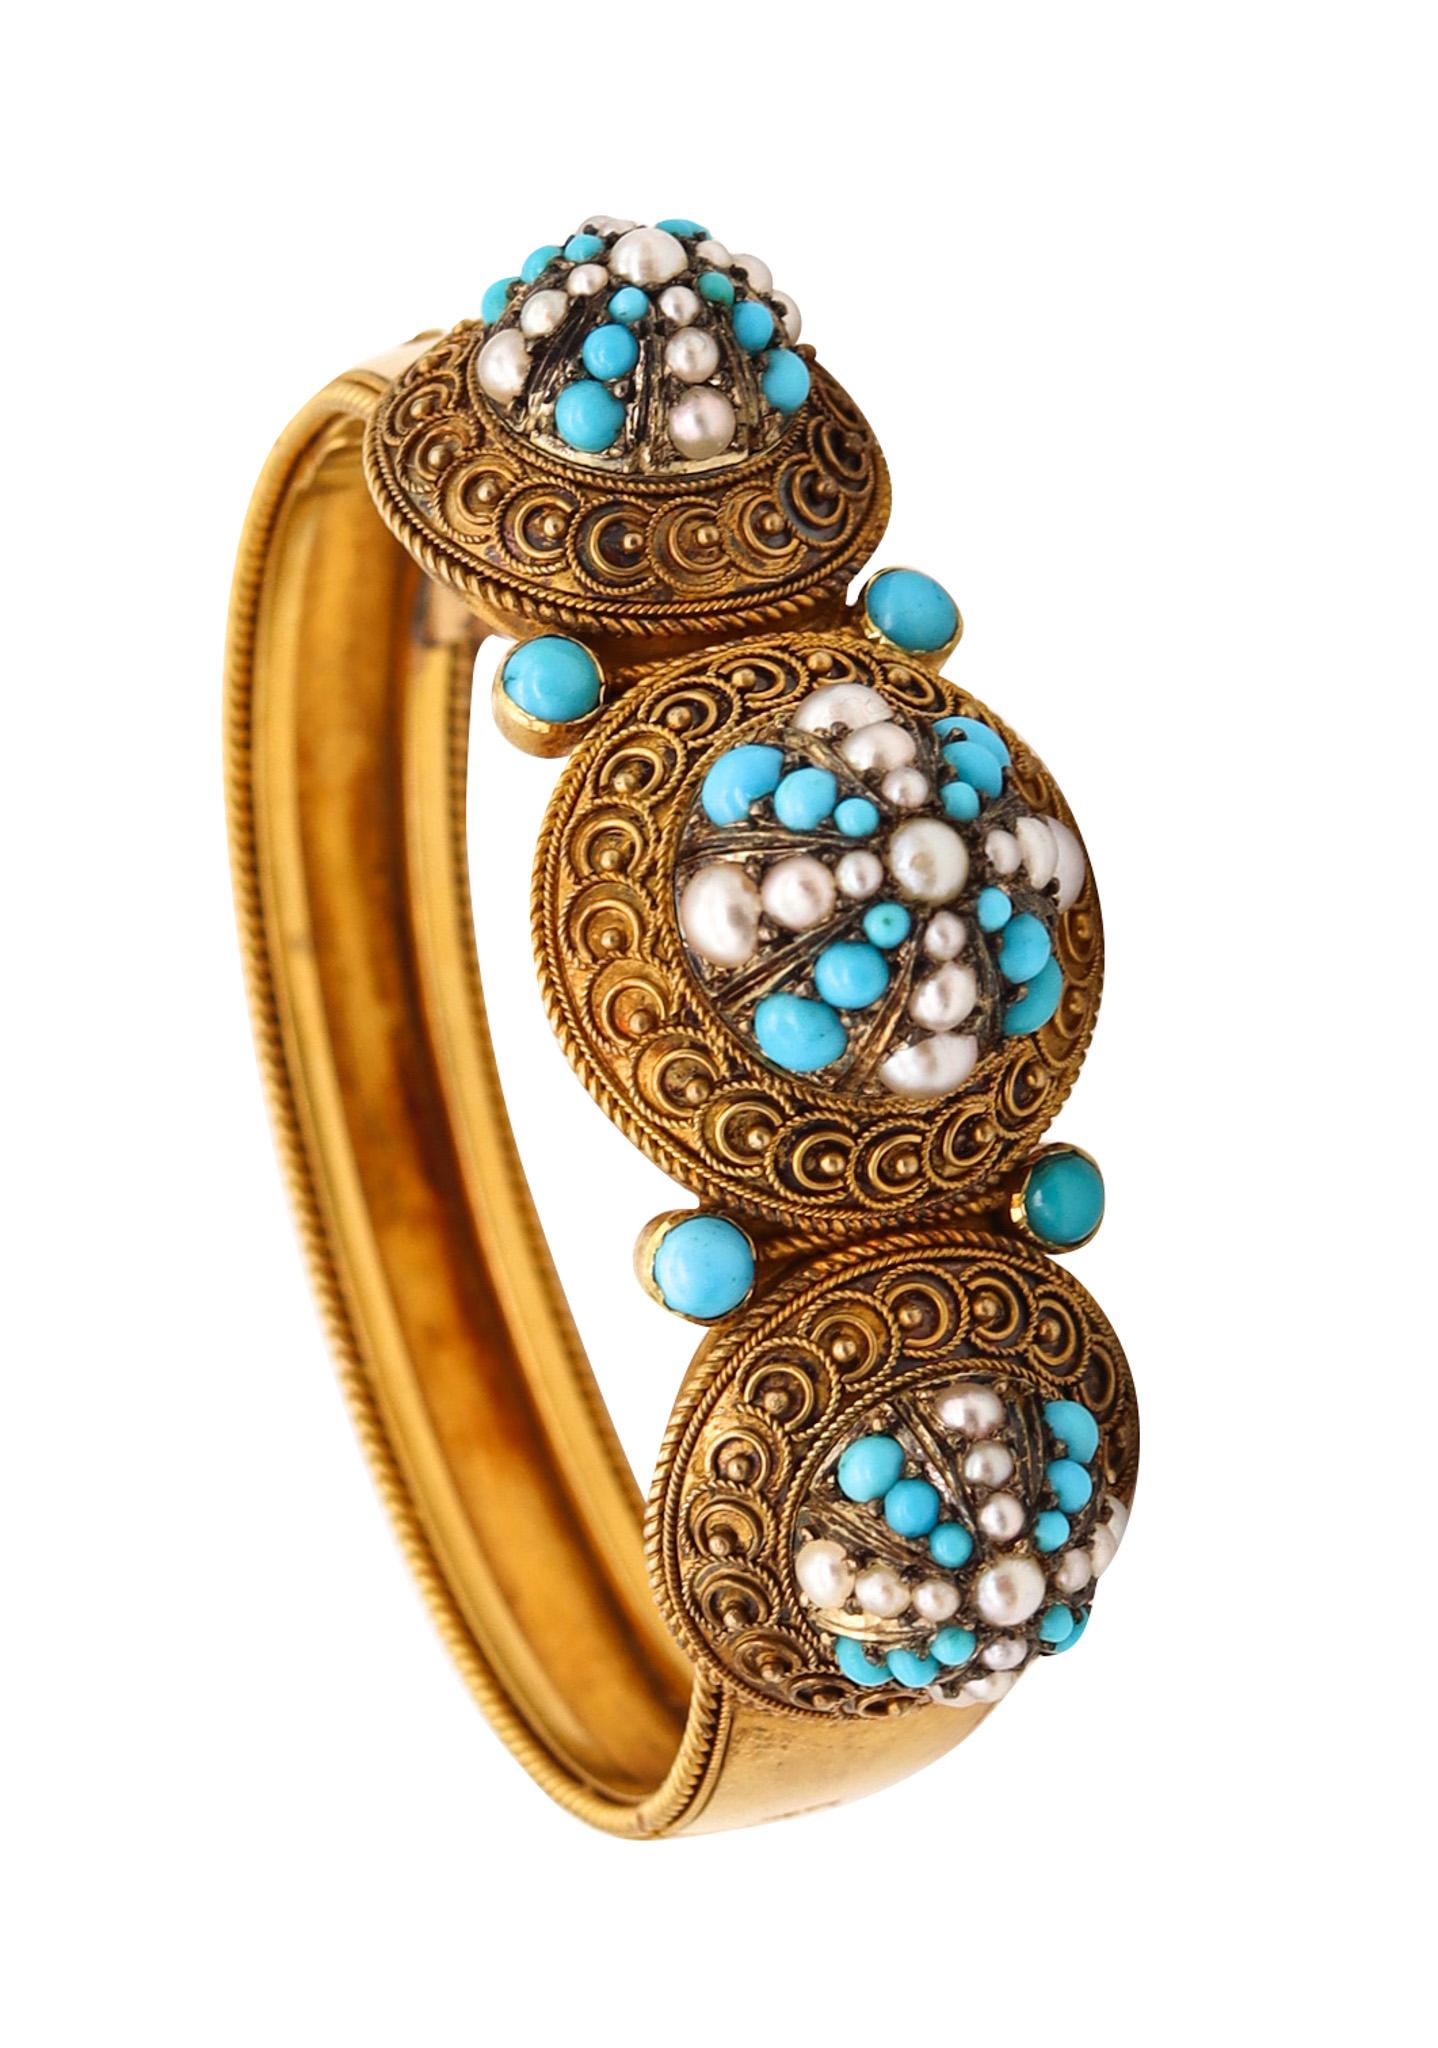 Viktorianisches etruskisches Revival-Armband aus 15 Karat Gold mit Türkis und Perlen im viktorianischen Stil von 1880